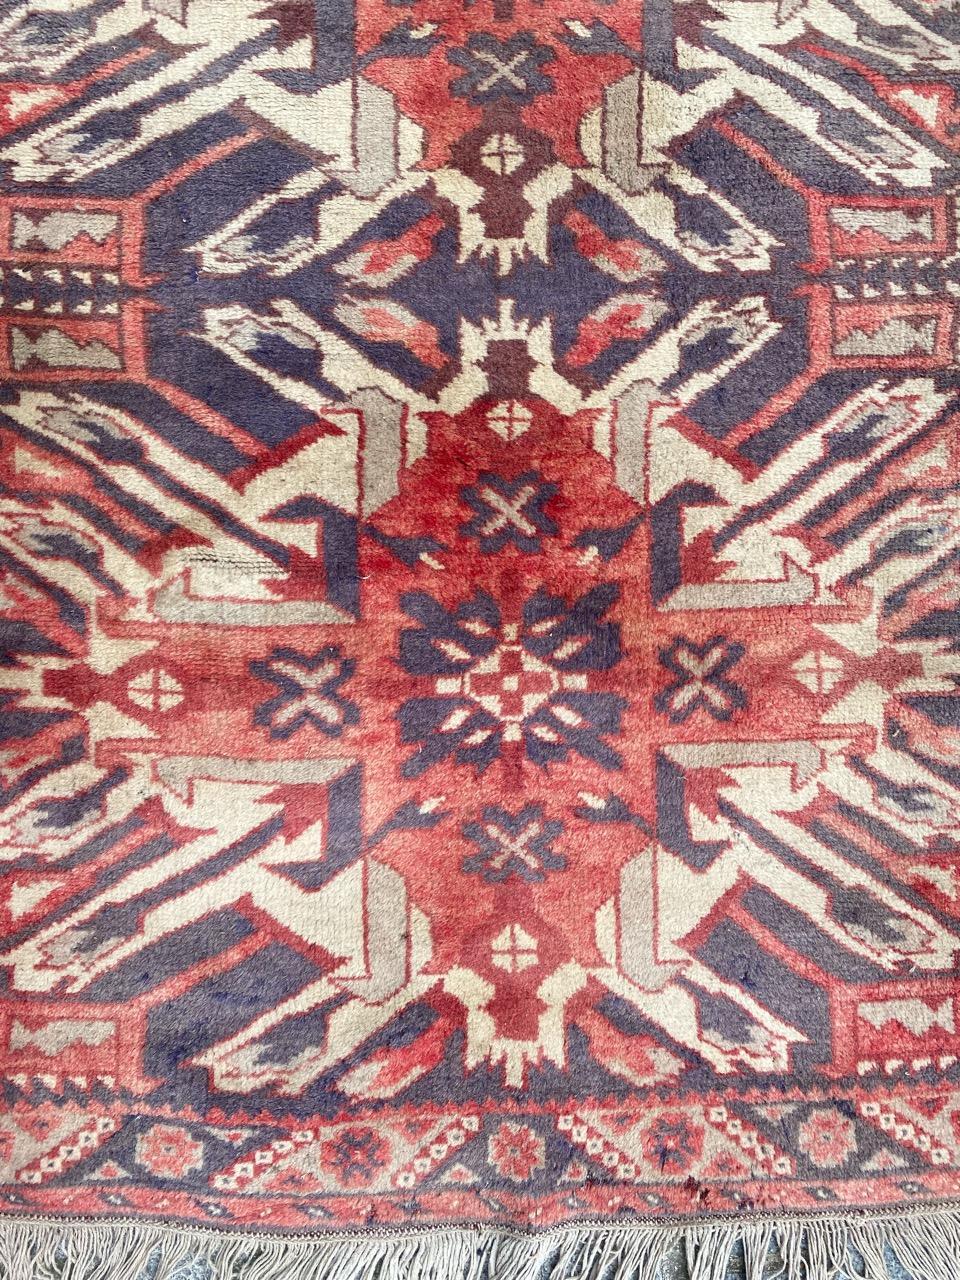 Schöner türkischer anatolischer Teppich aus der Mitte des Jahrhunderts mit einem Kazak-Muster und schönen verblassten Farben, vollständig handgeknüpft mit Wollsamt auf Wollfond.

✨✨✨
